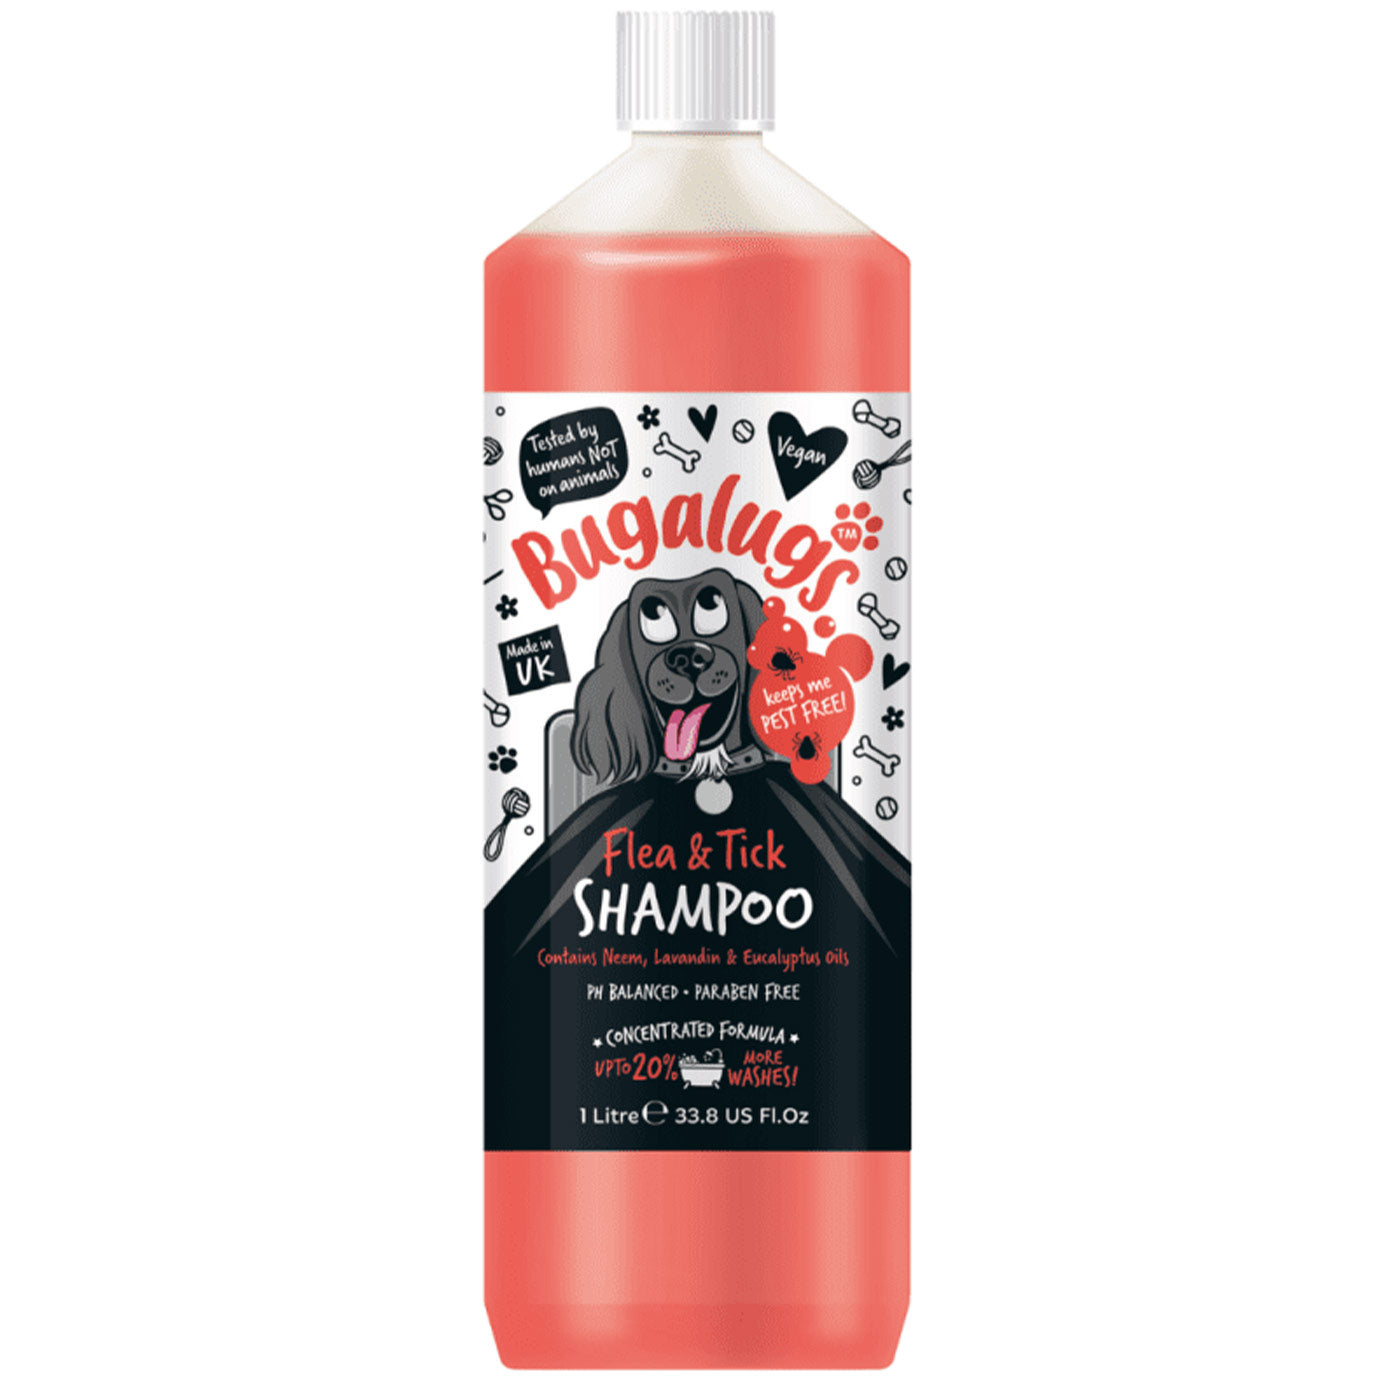 Bugalugs Flea & Tick Shampoo